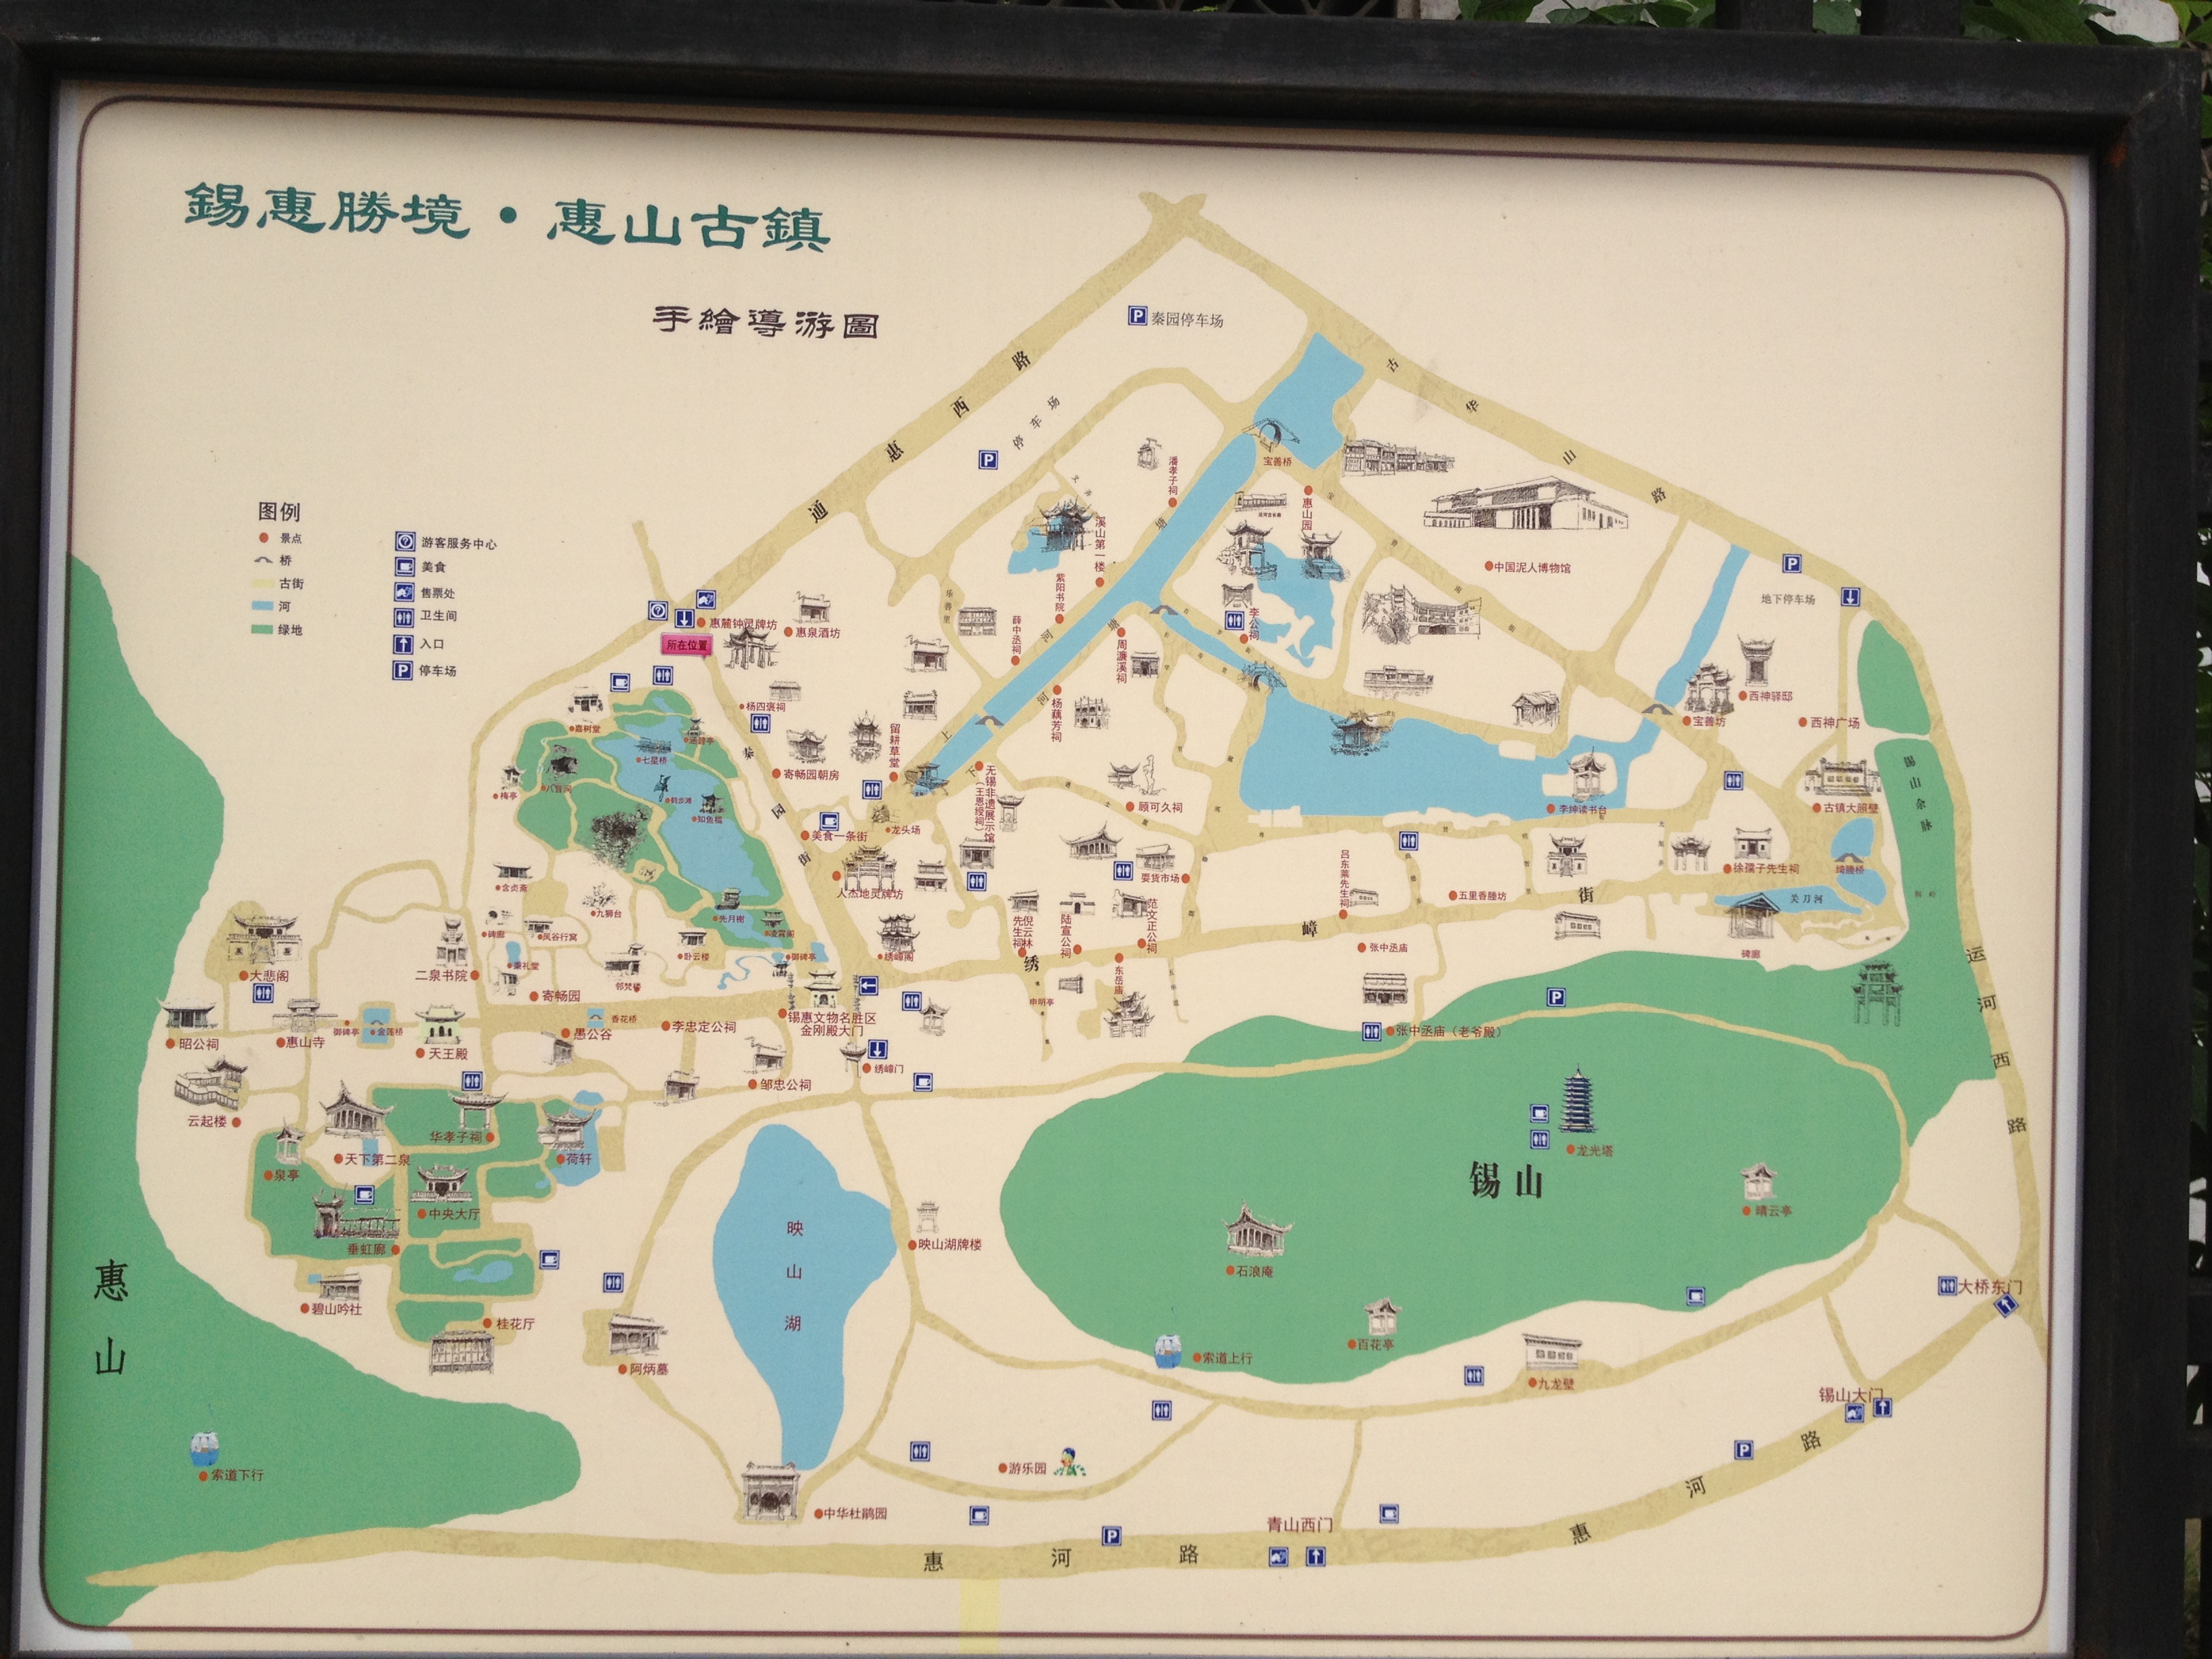 惠山区洛社镇地图图片